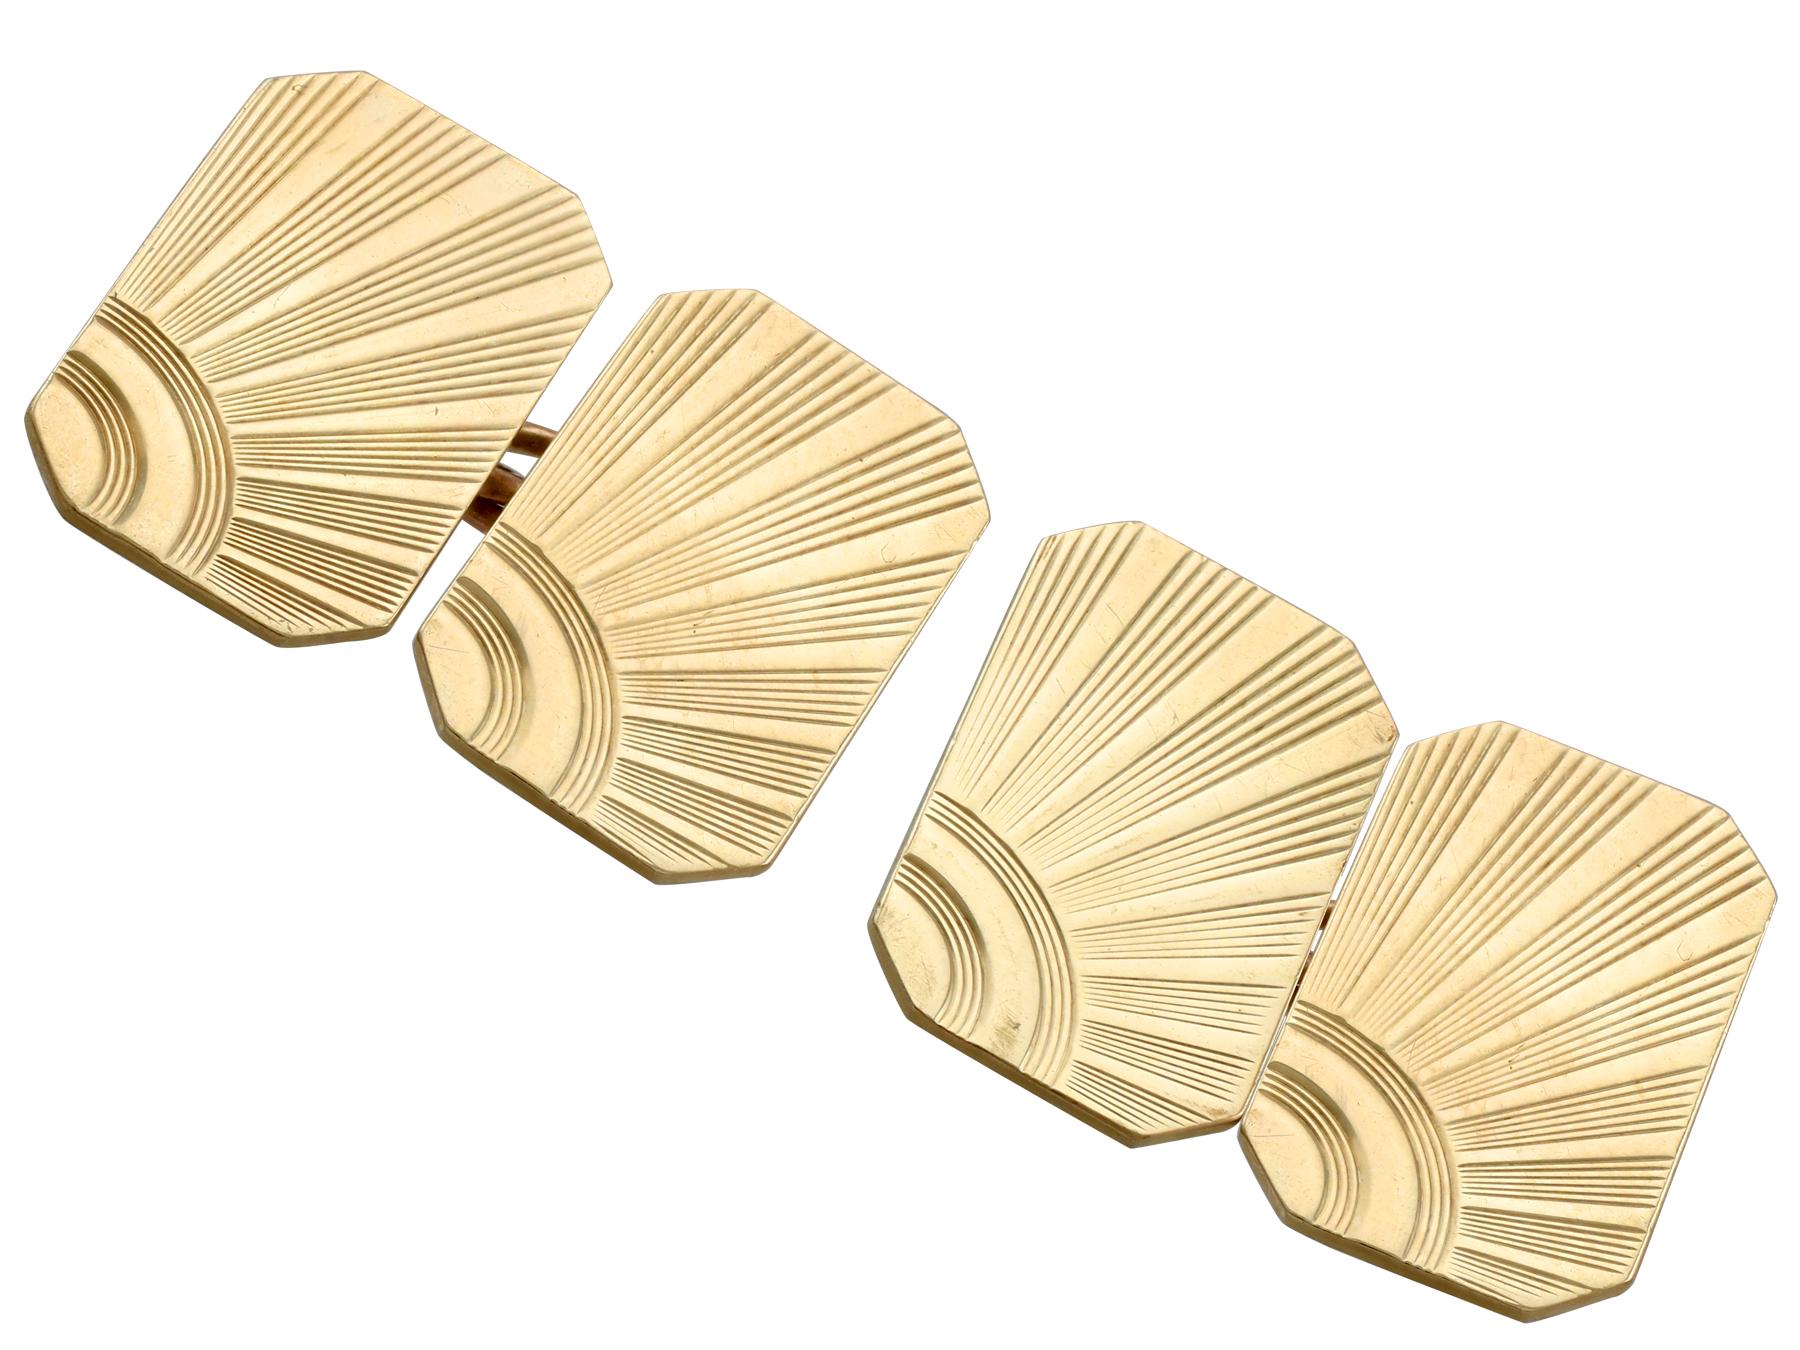 Une paire de boutons de manchette vintage de style Art Deco en or jaune 9 carats, faisant partie de notre collection de bijoux pour hommes.

Ces boutons de manchette vintage ont été réalisés en or jaune 9 carats dans le style Art Deco.

Les boutons